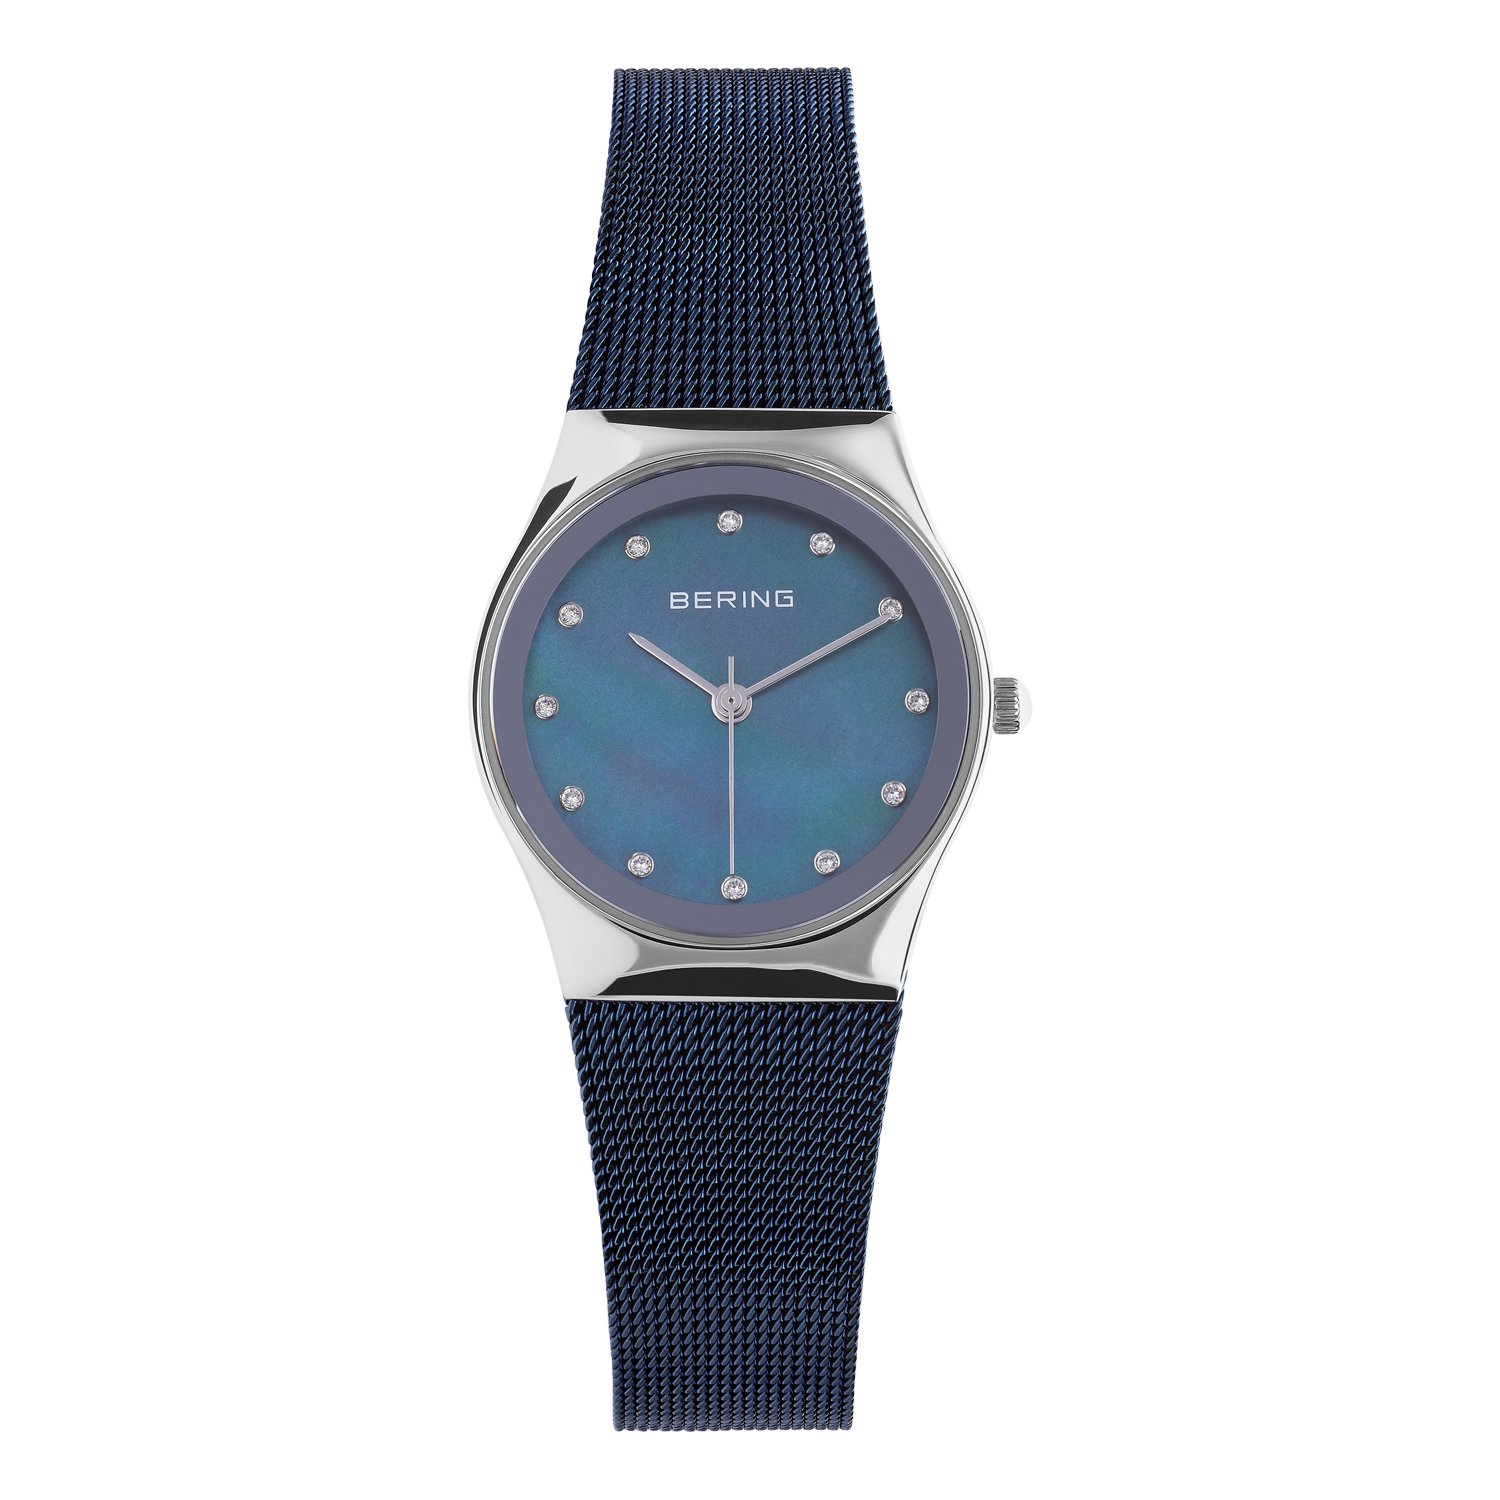 Bering horloge met mesh band blauw 12927-307